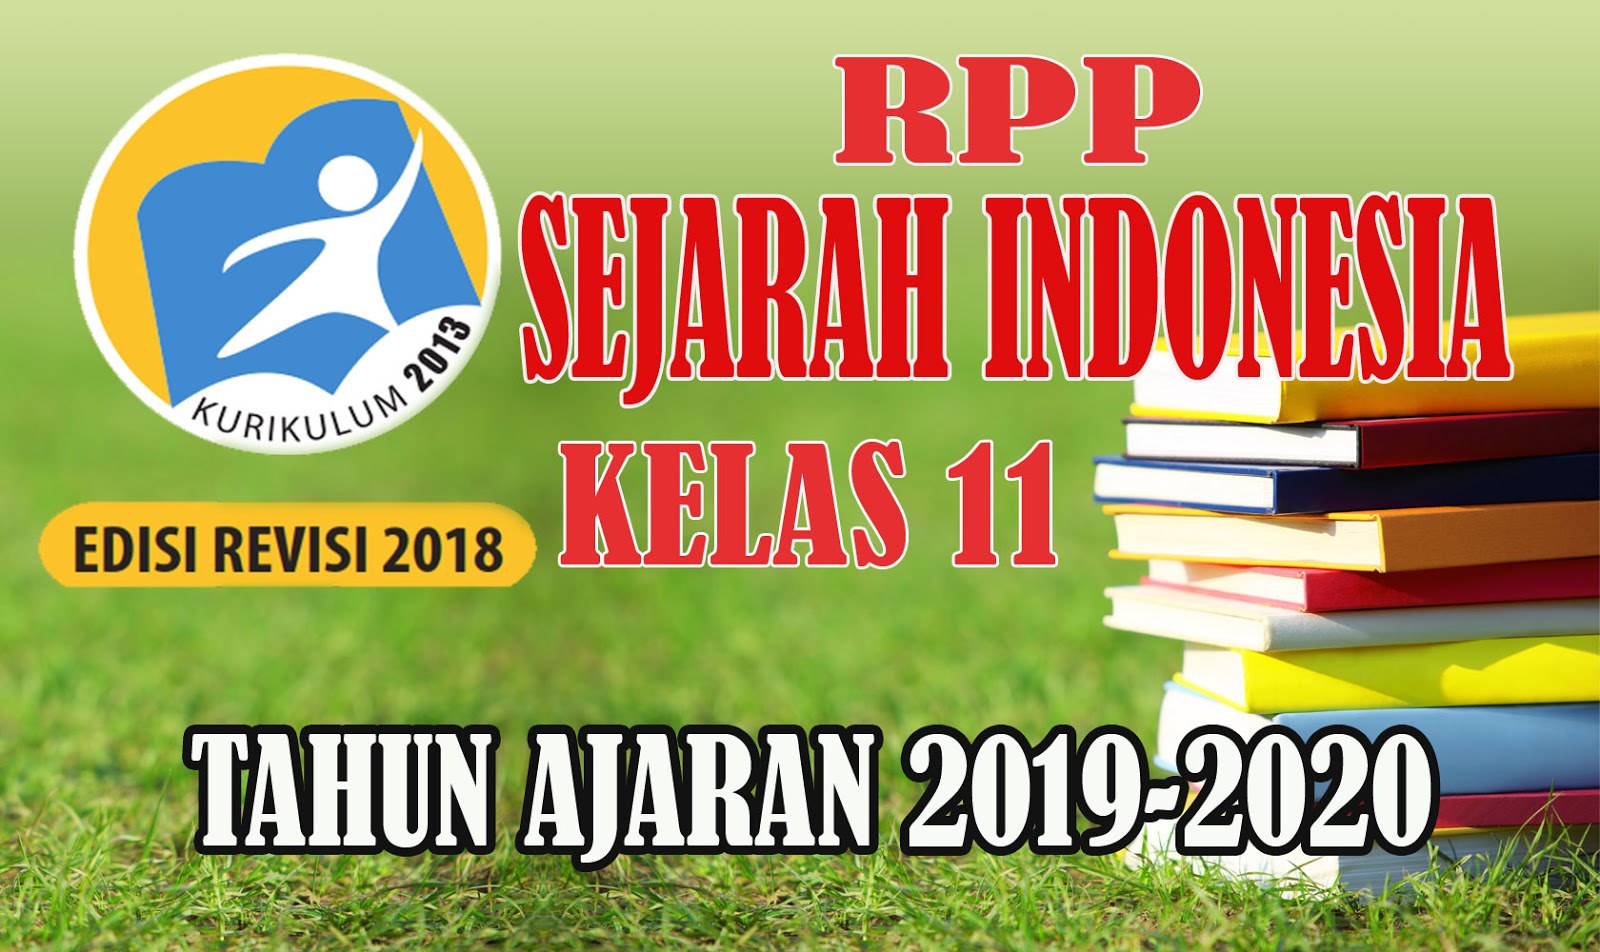 RPP SEJARAH INDONESIA TERBARU KELAS 11 Kurikulum 2013 Revisi 2018